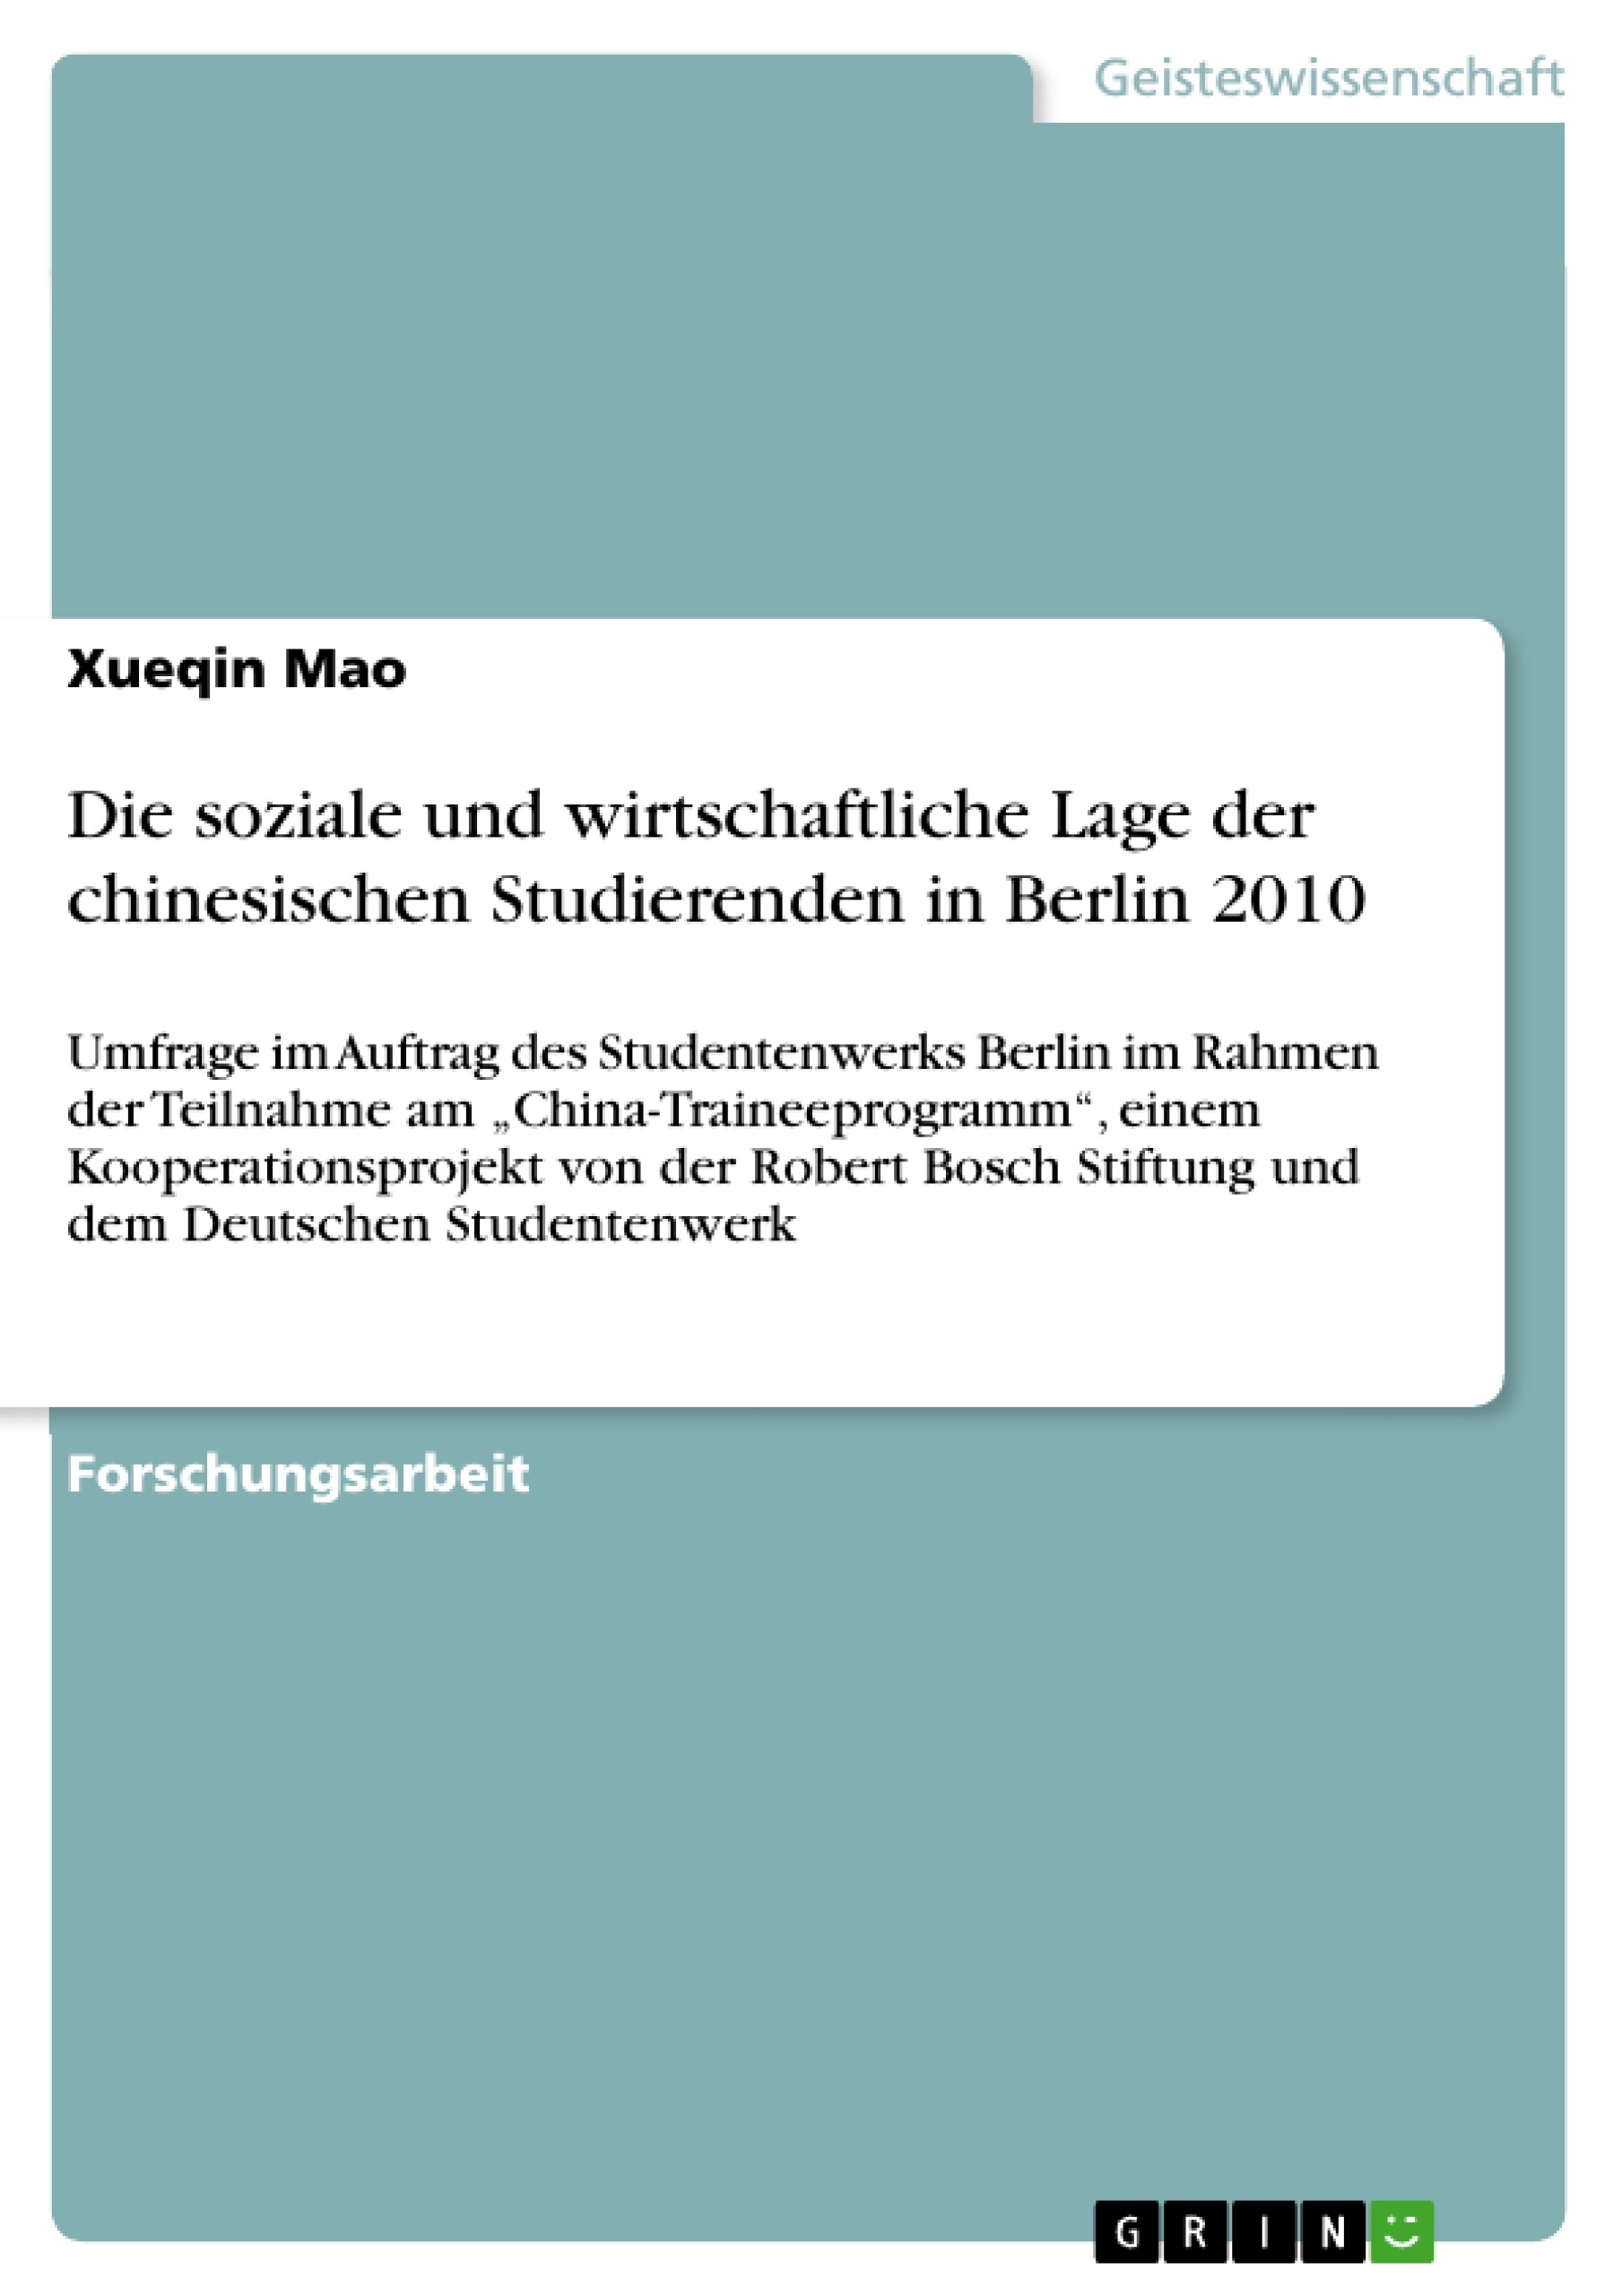 Titre: Die soziale und wirtschaftliche Lage der chinesischen Studierenden in Berlin 2010